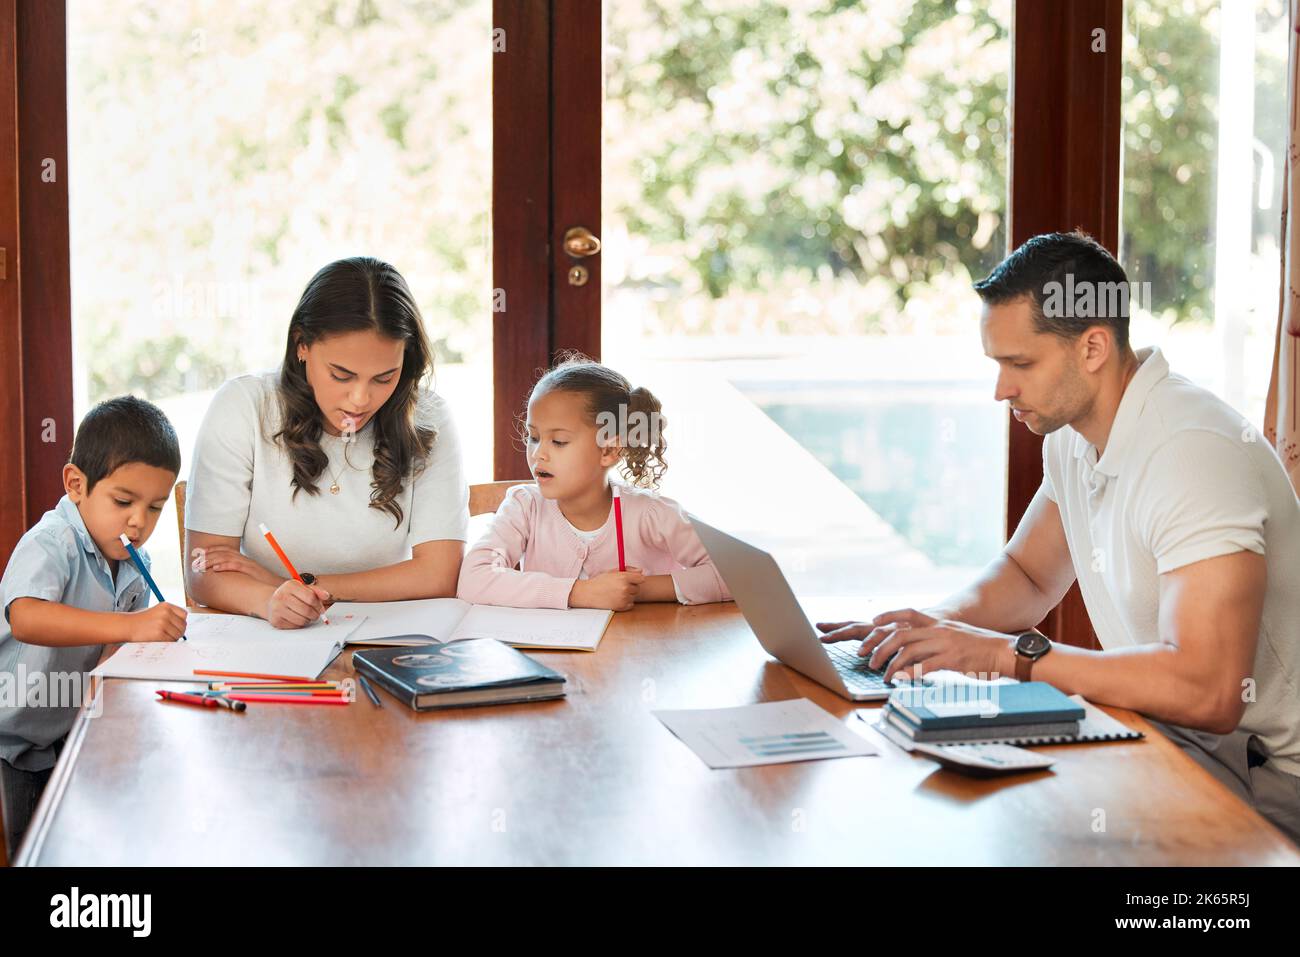 Jeune mère de race mixte aidant ses enfants à faire leurs devoirs pendant que leur père travaille sur un ordinateur portable à une table dans le salon. Dessin de petits frères et sœurs Banque D'Images